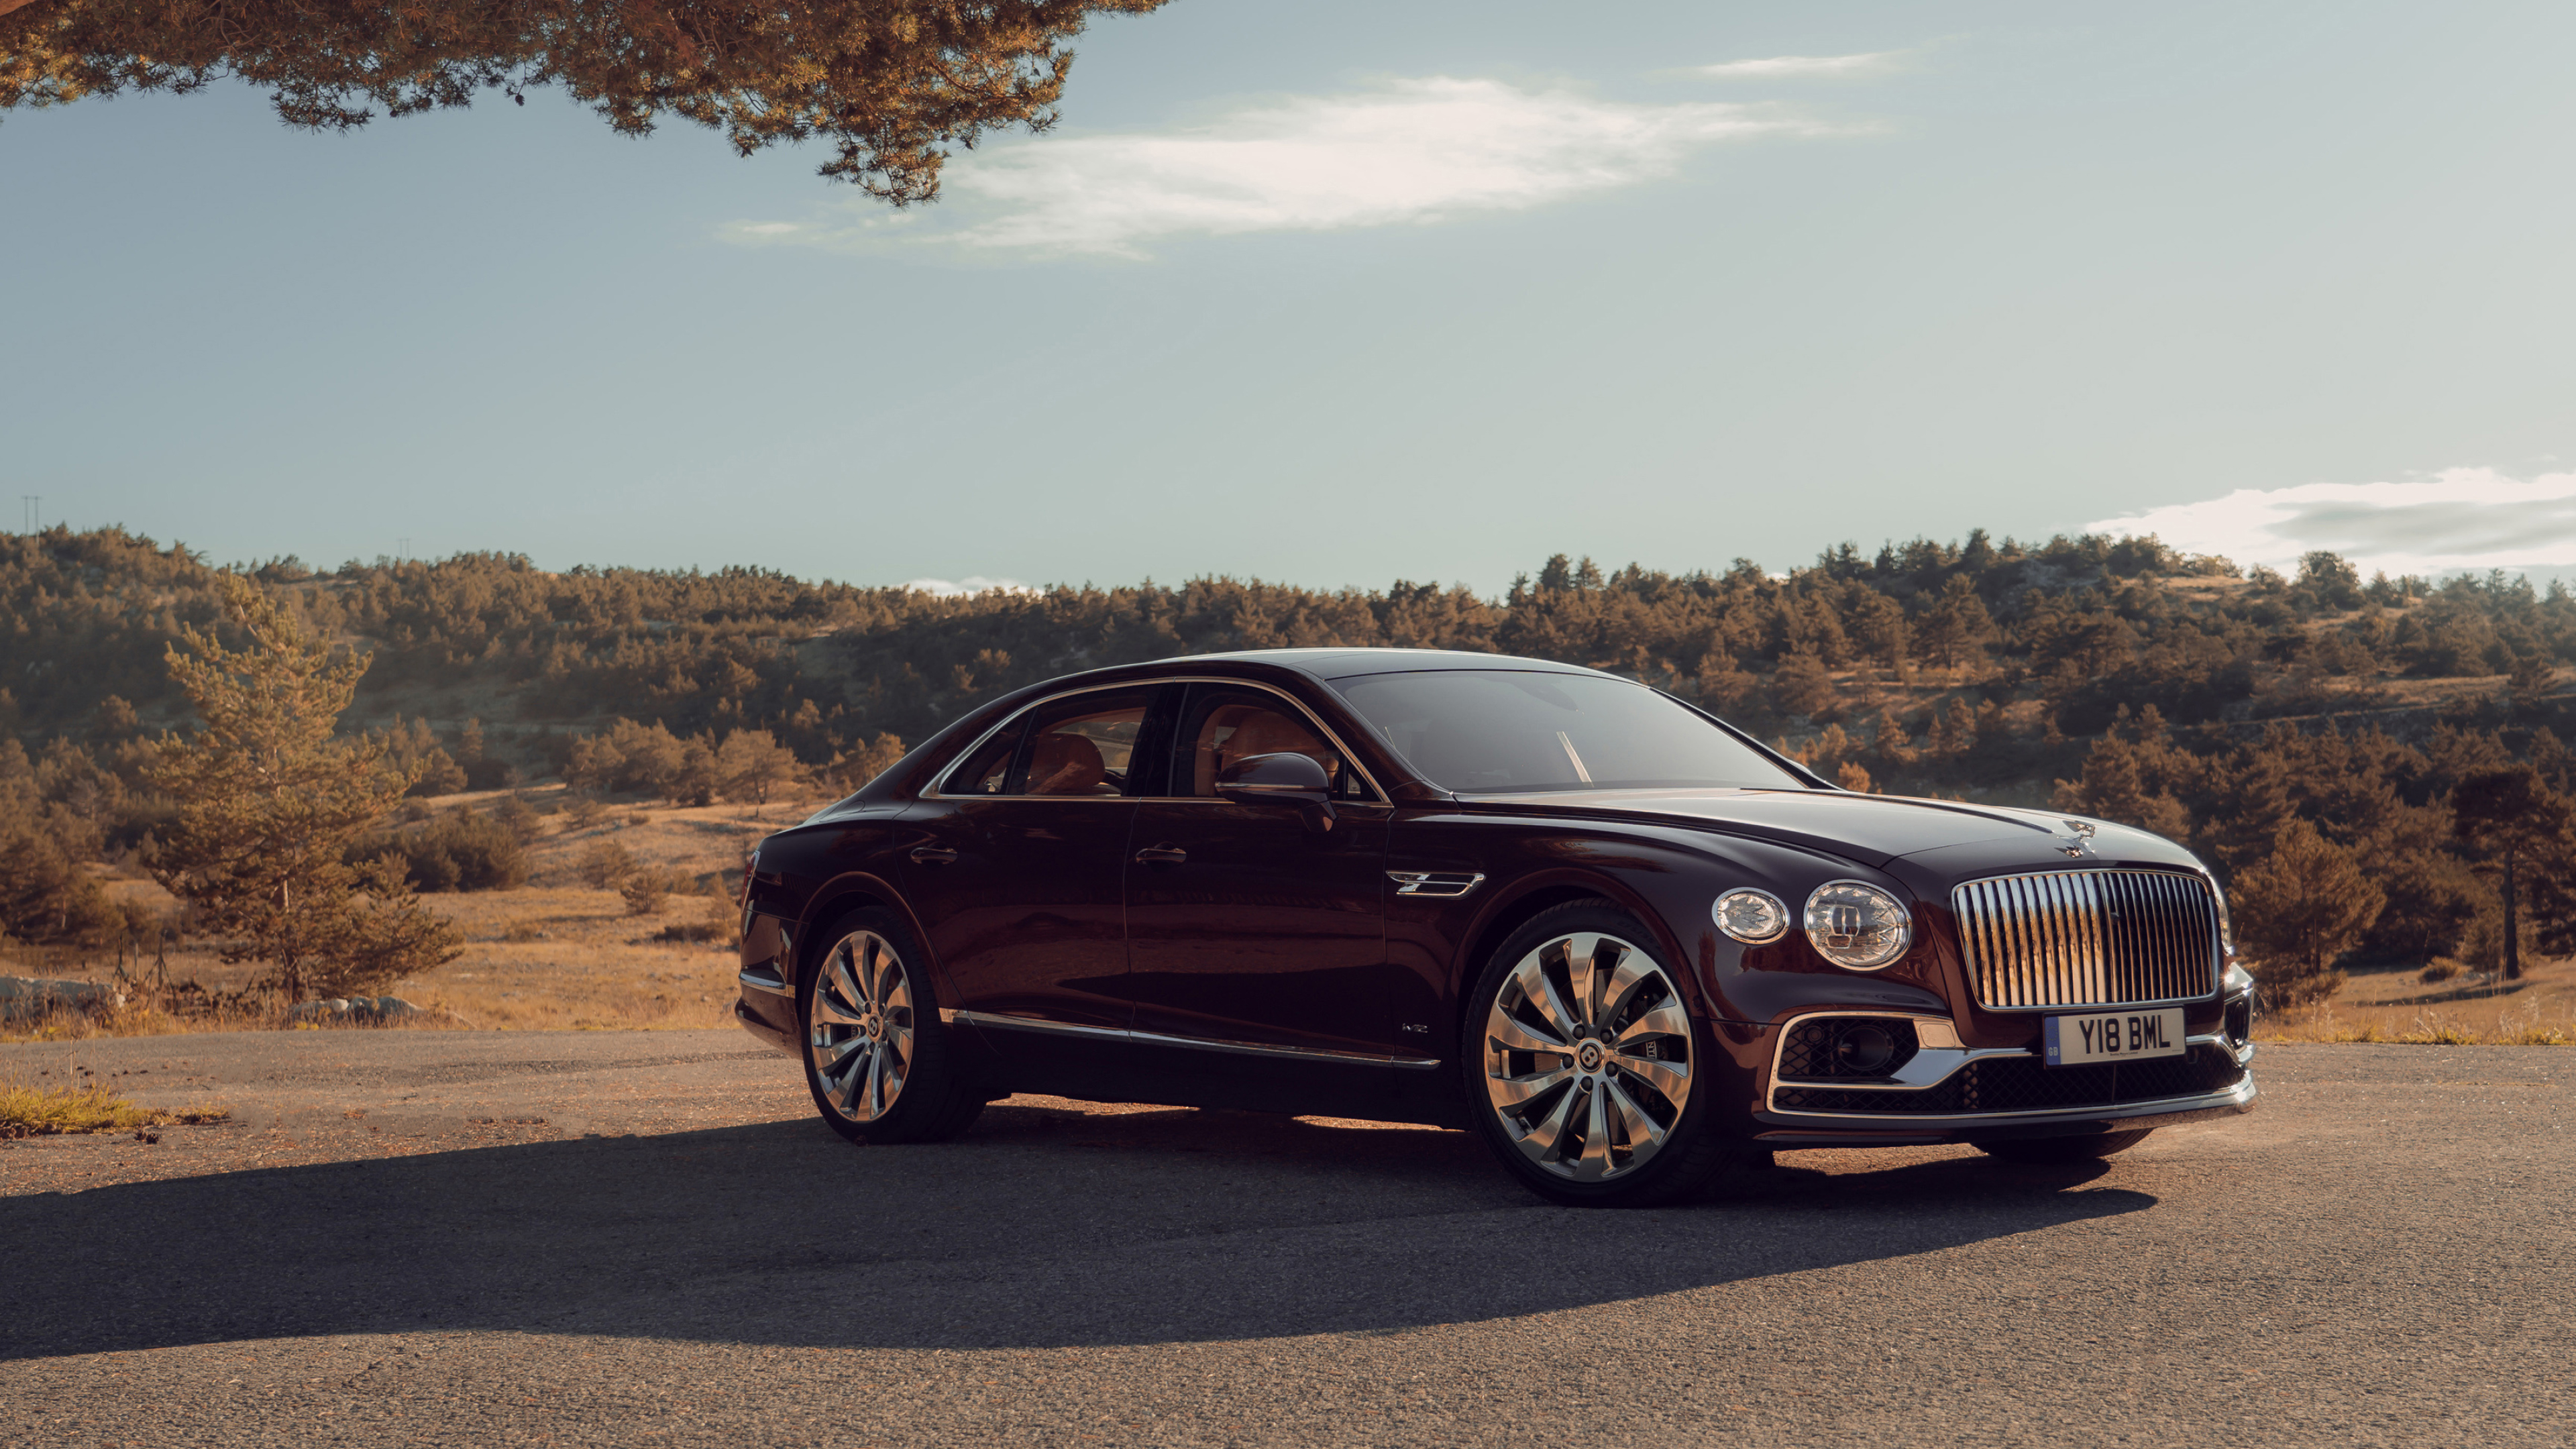 Bentley Flying Spur, Luxury cars, Cricket ball, 2019, 3840x2160 4K Desktop